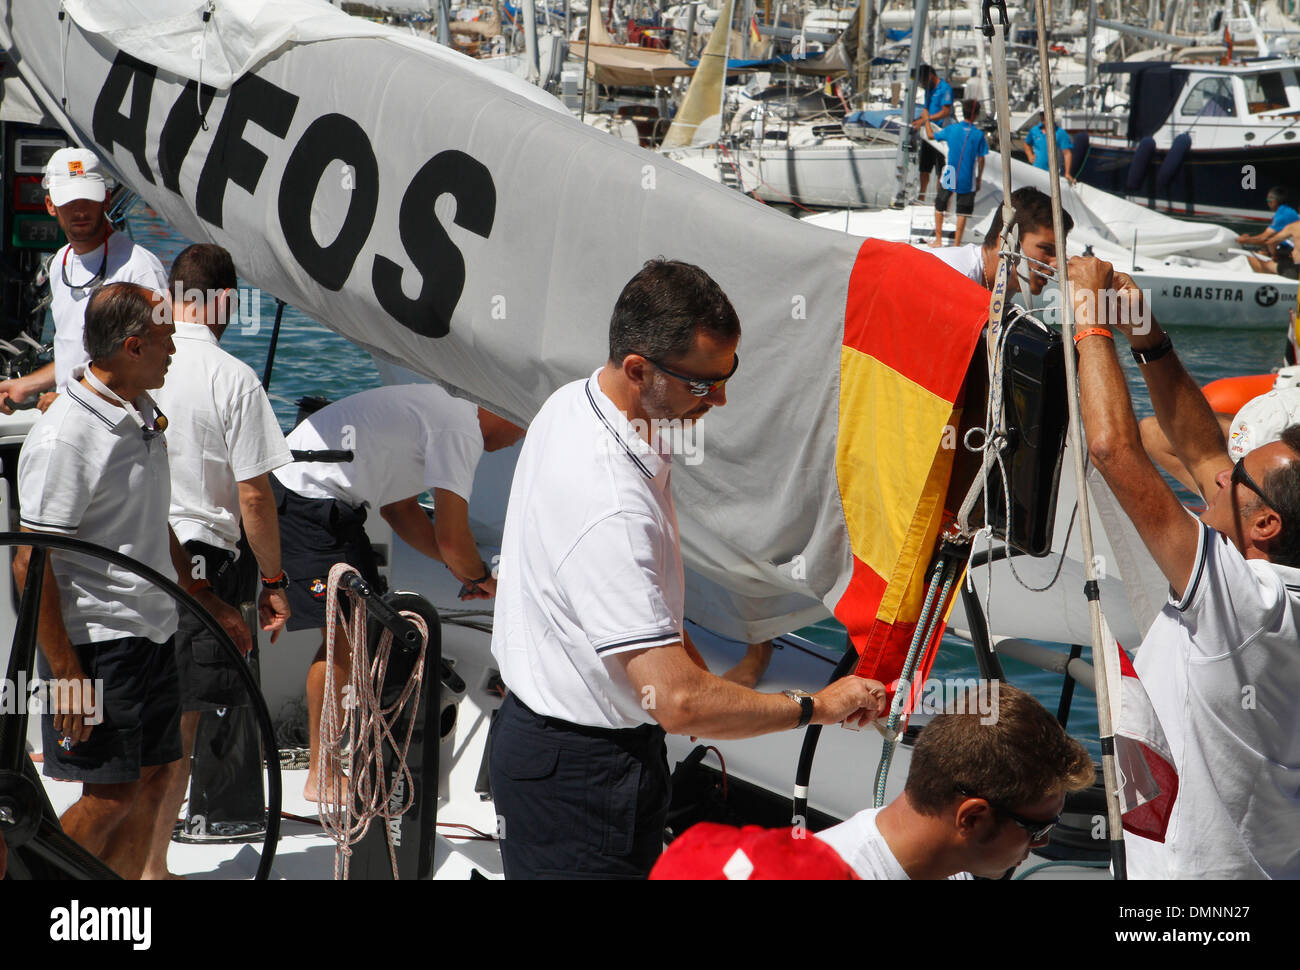 Spaniens Kronprinz Felipe segelt an Bord der Yacht Aifos während einer Etappe der Copa del Rey Regatta in Palma De Mallorca, Spanien Stockfoto